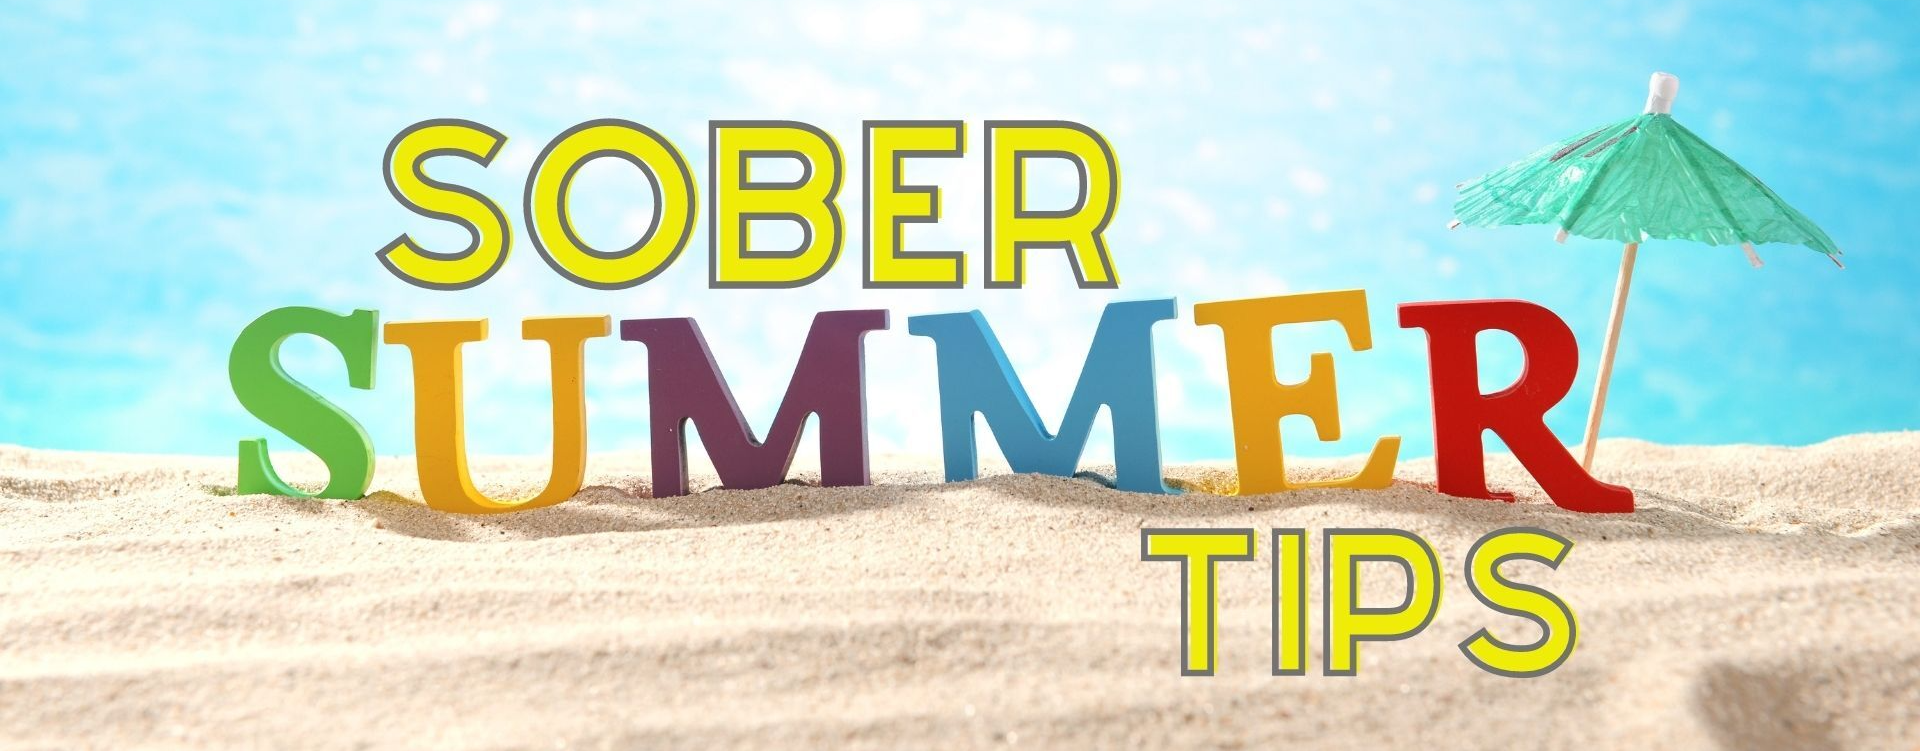 sober summer tips